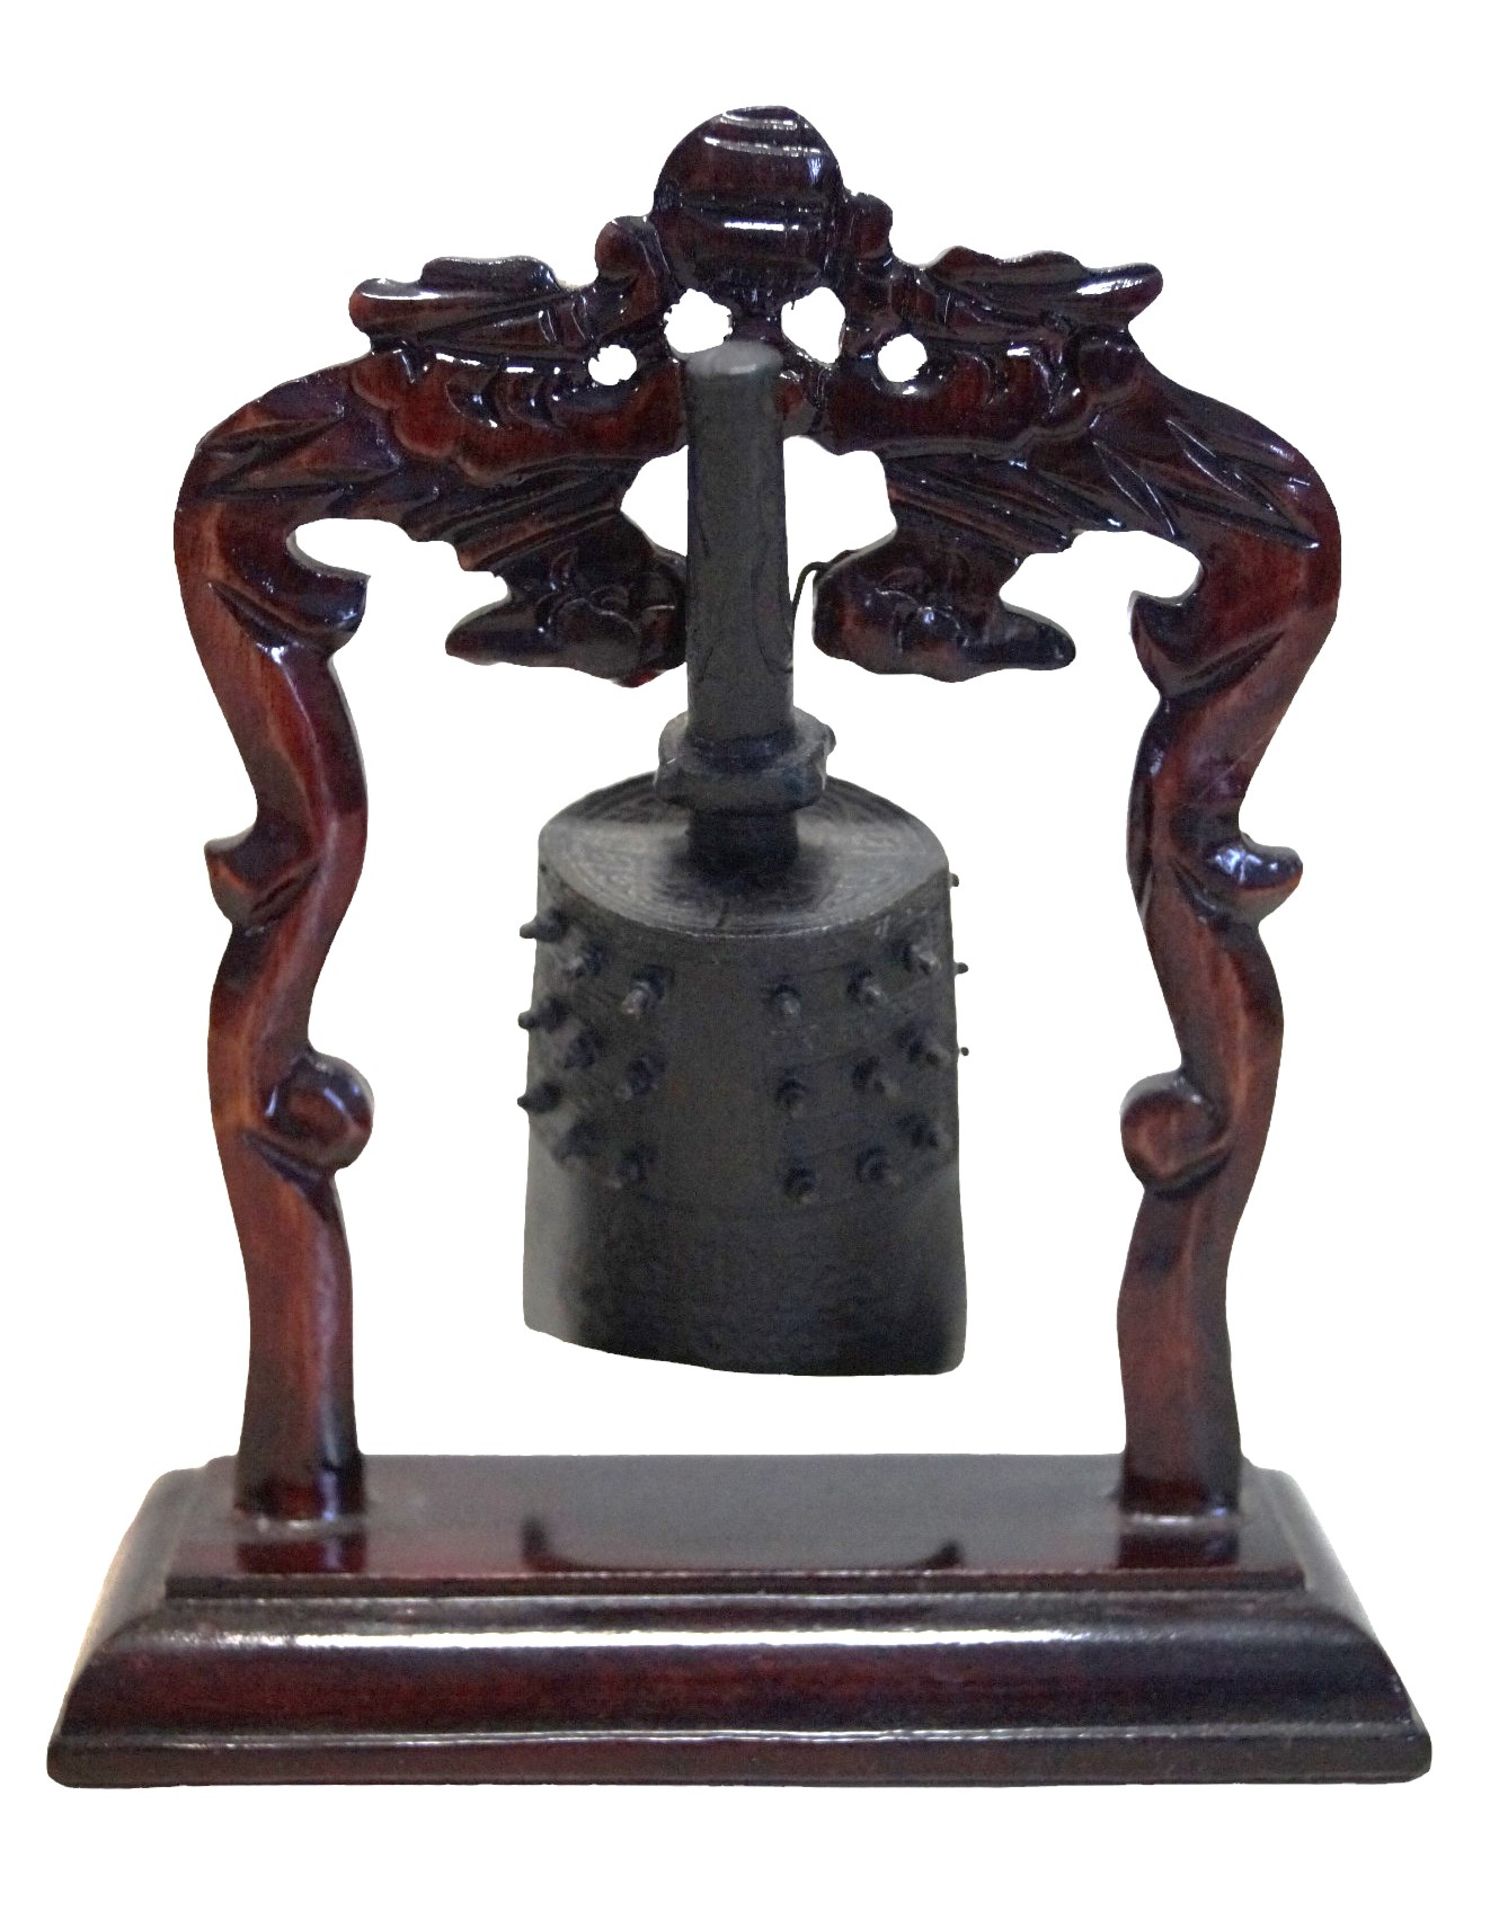 Modell der berühmten Yong-Glocke (甬鐘/ 甬钟, yǒng zhōng) aus dem Glockenspiel des Markgrafen Yi von Ze